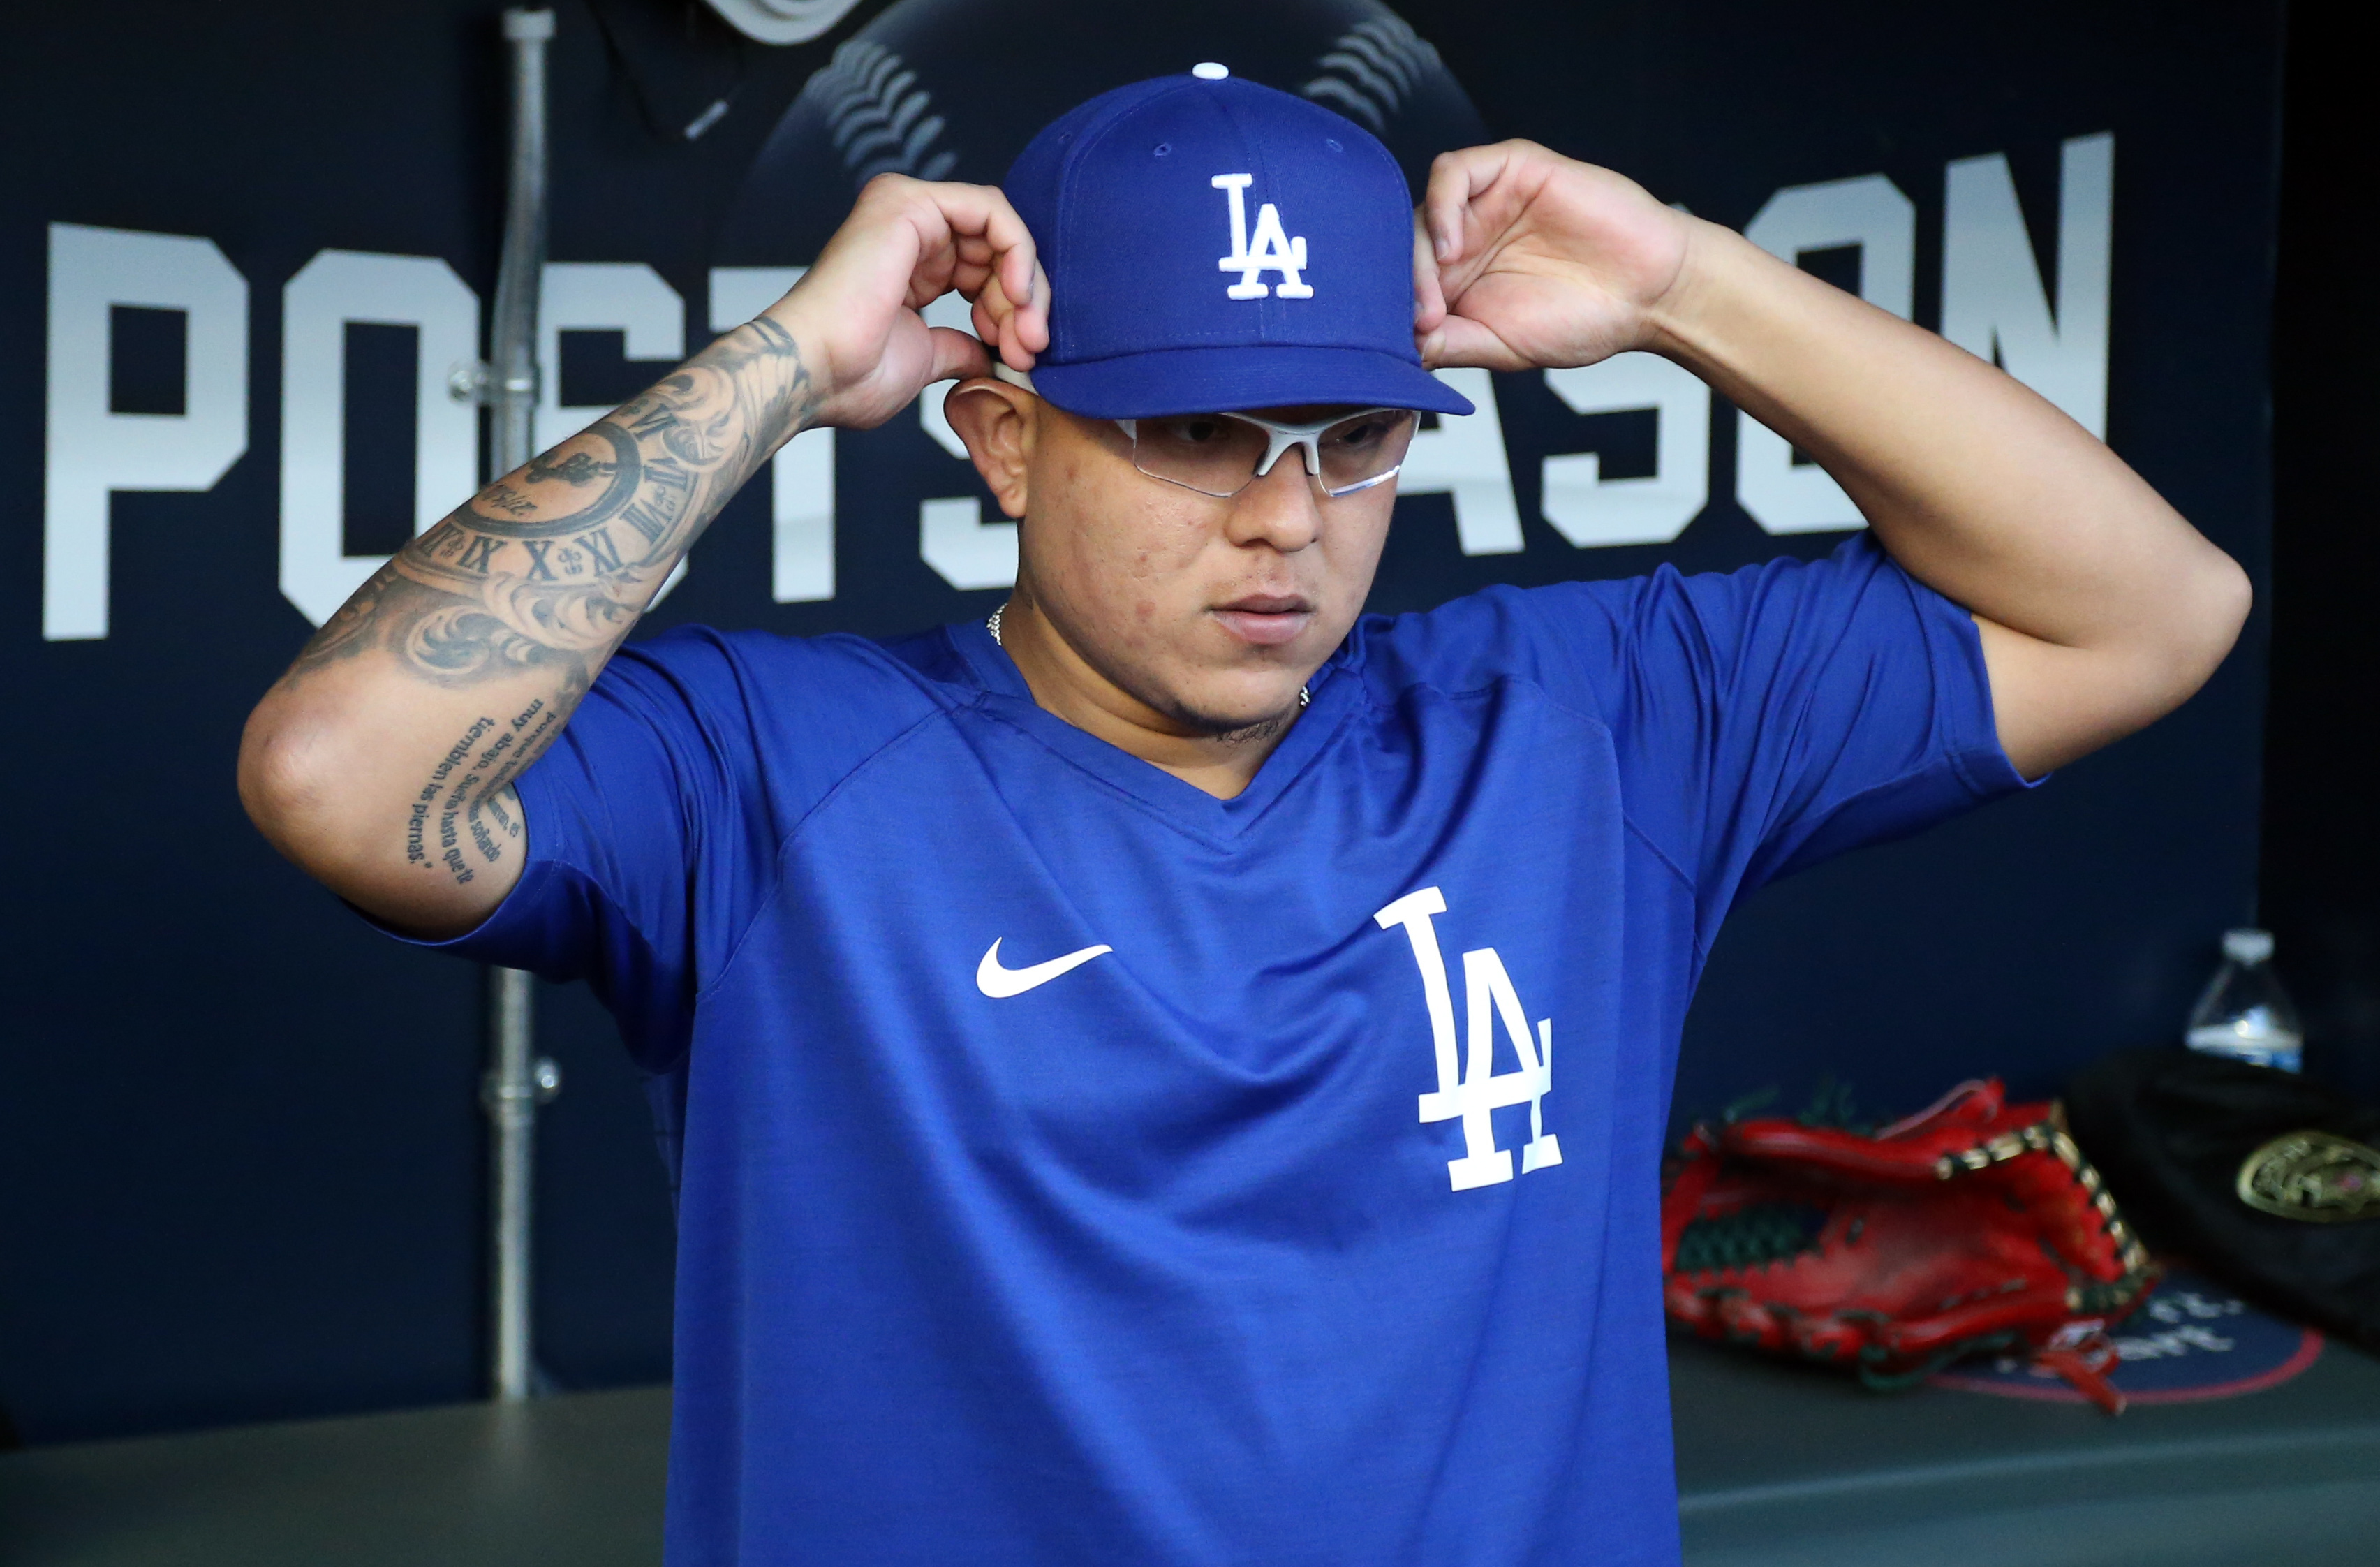 MLB: Dodgers de Los Ángeles presentan jerseys mexicanos (IMÁGENES), Noticias de México